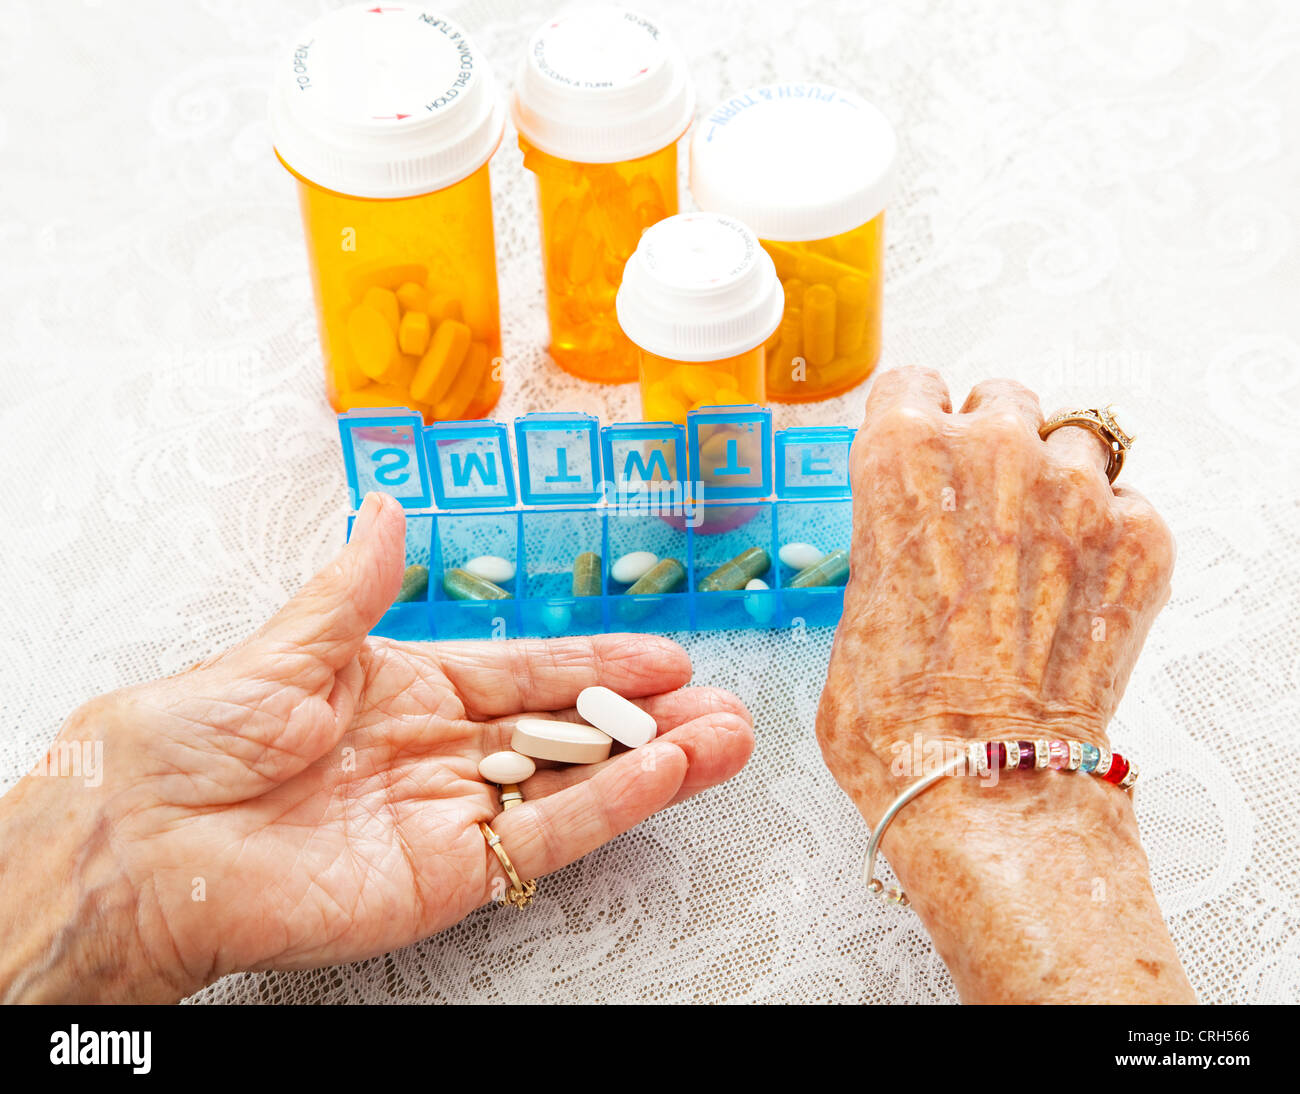 Vue rapprochée d'un quatre-vingts ans, senior woman's hands alors qu'elle trie ses médicaments sur ordonnance. Banque D'Images